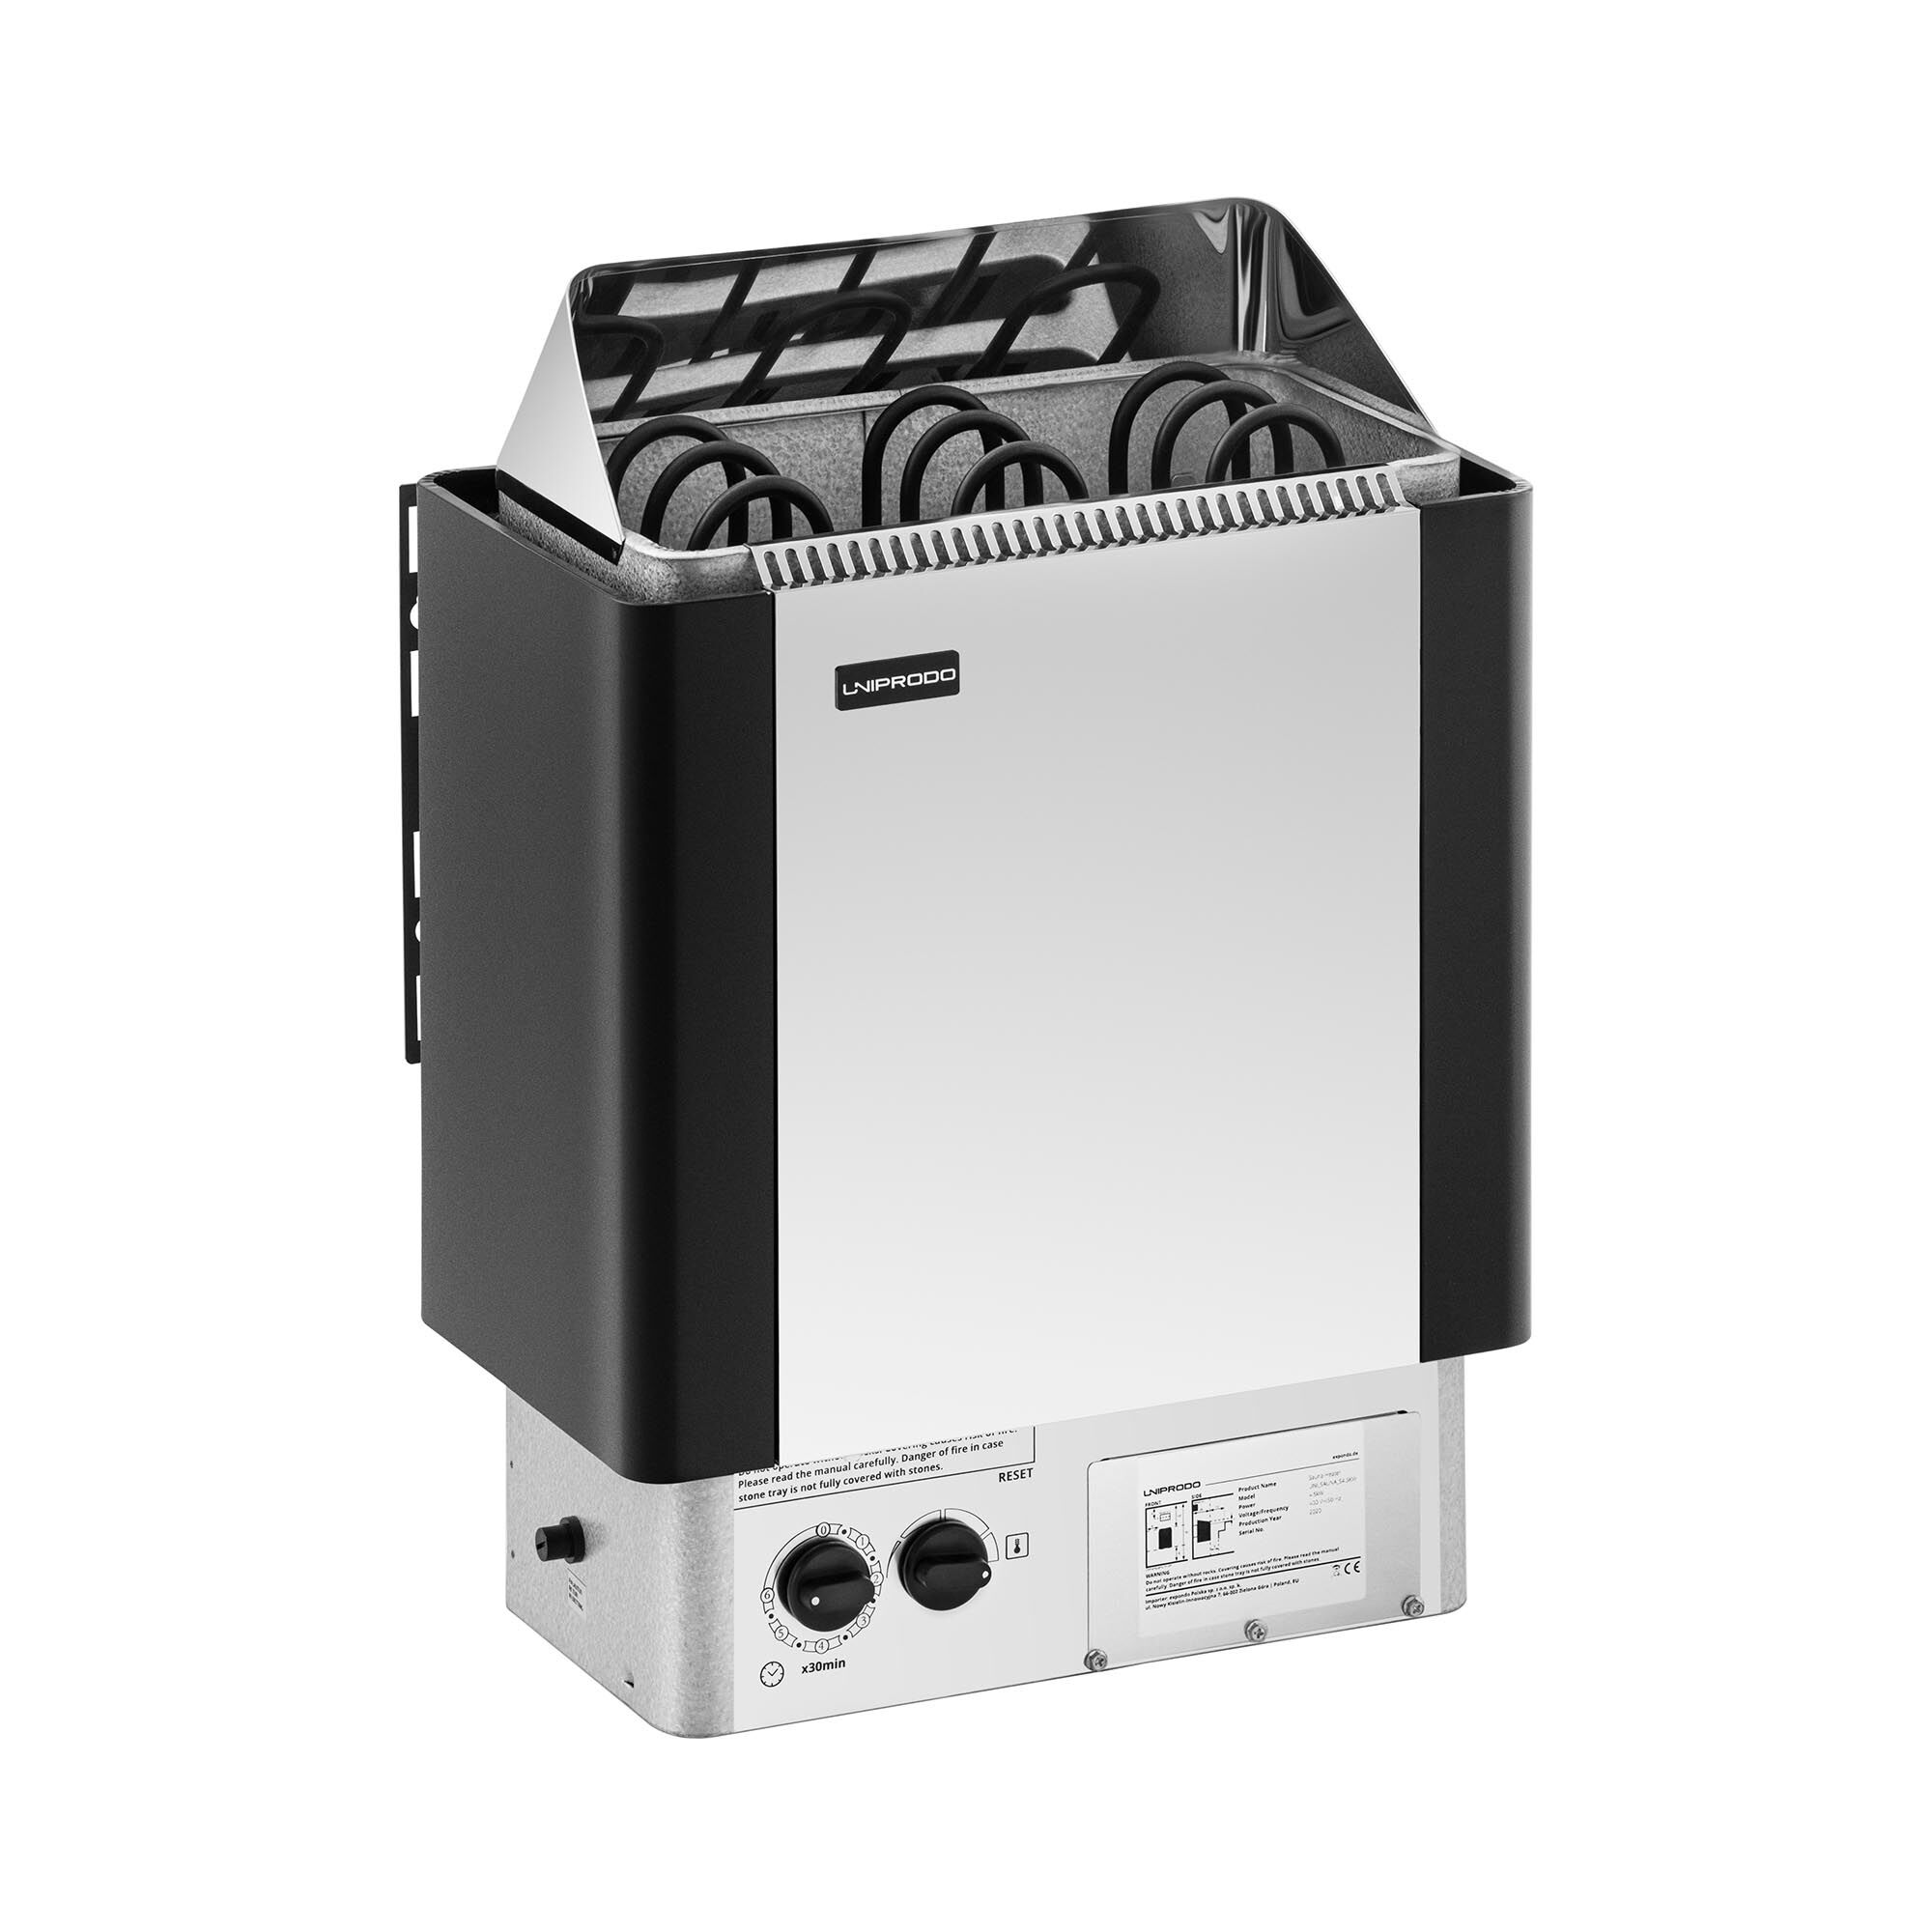 Uniprodo Sauna Heater - 4.5 kW - 30 to 110 °C